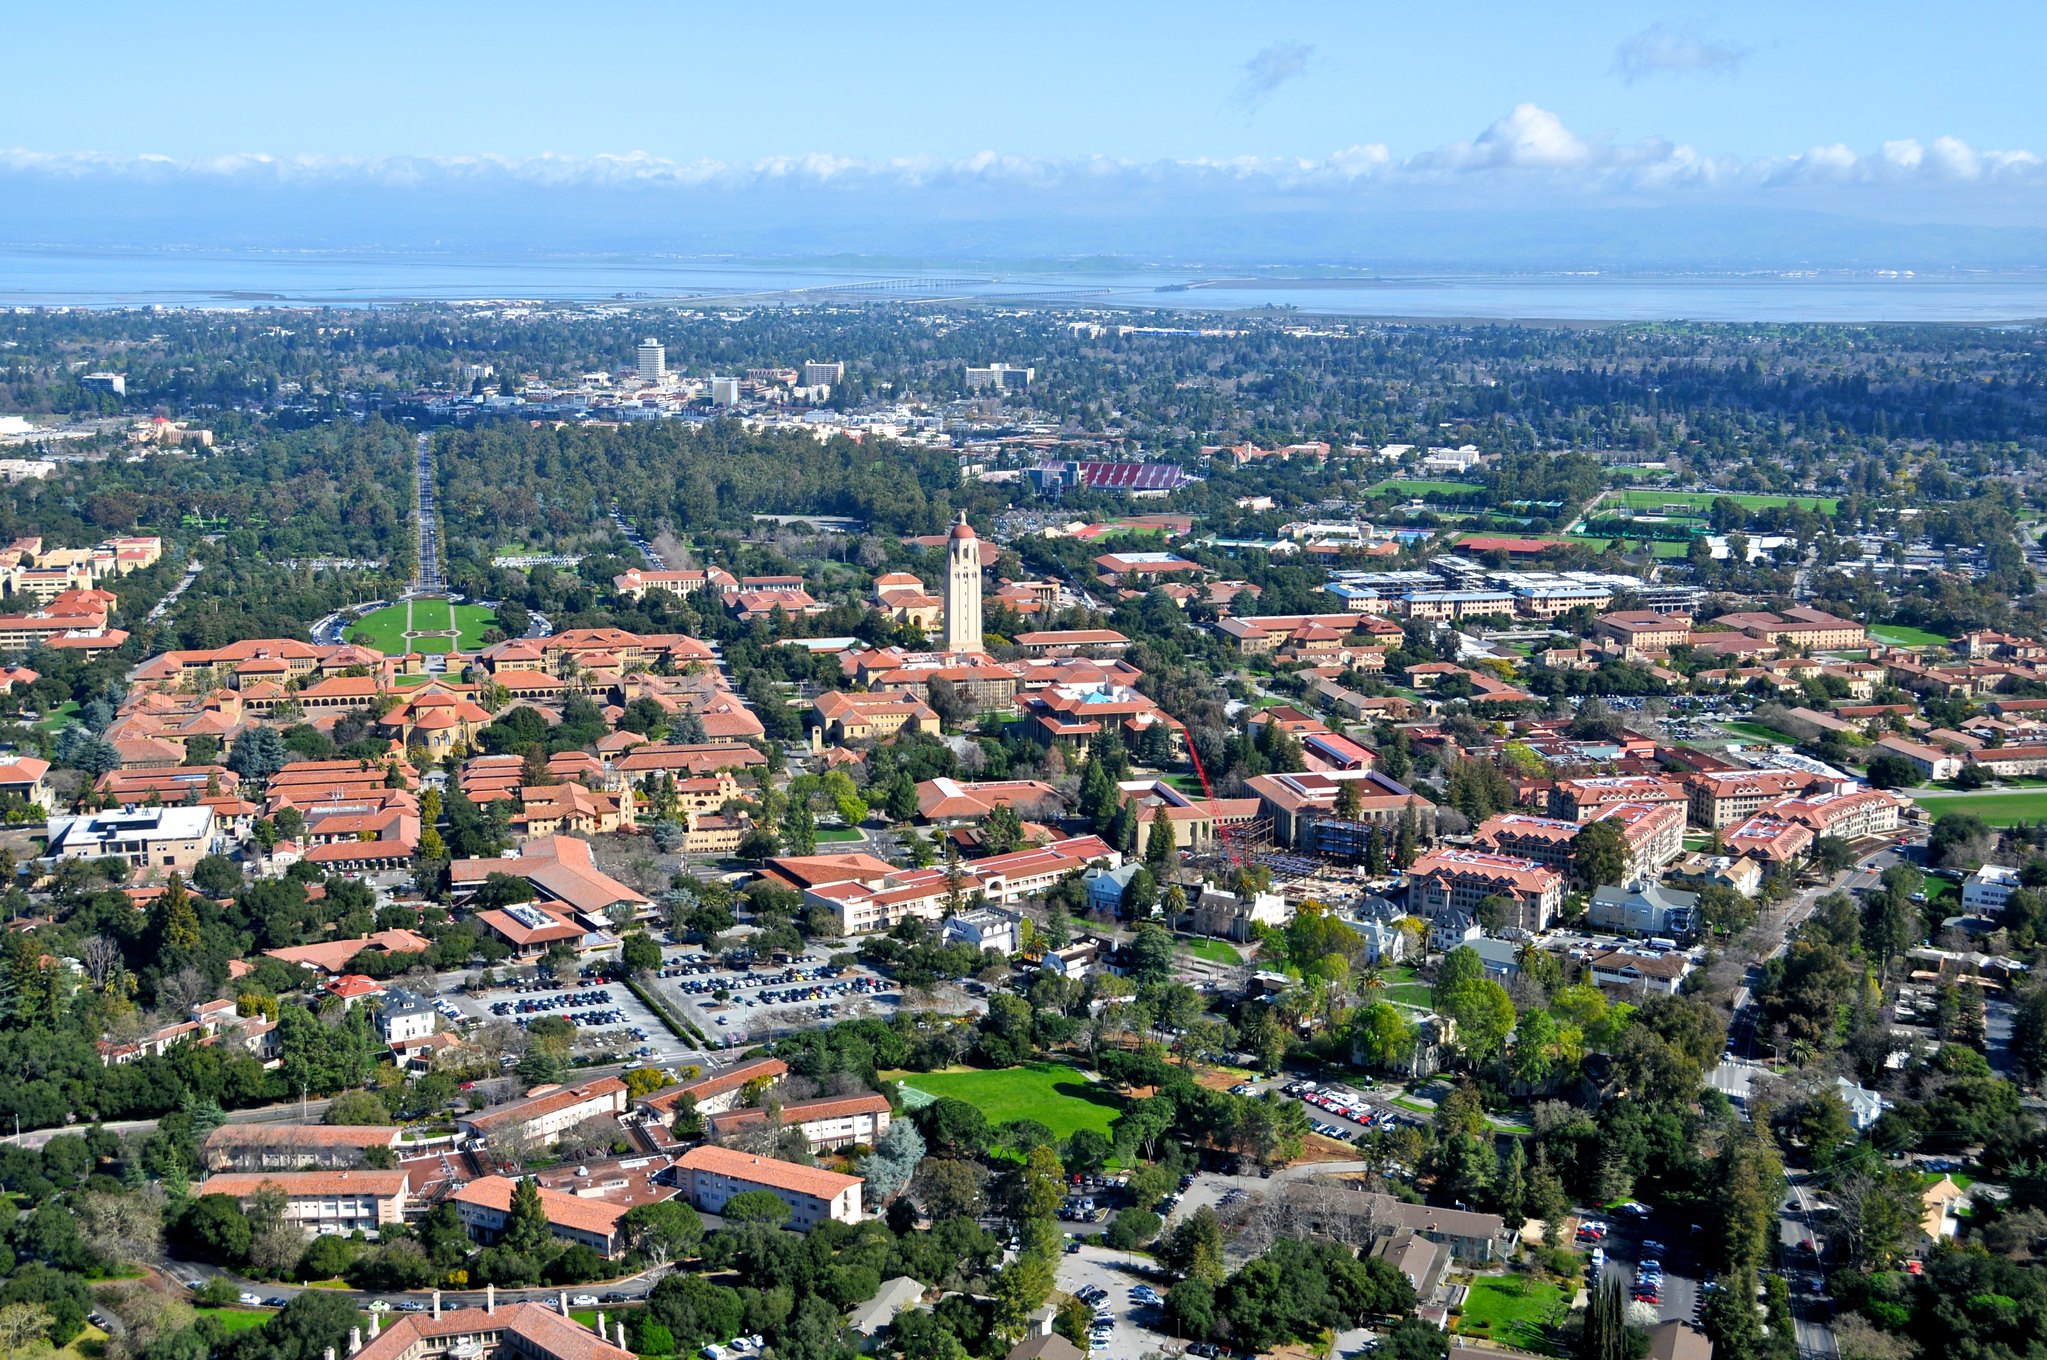 Aerial view of Los Altos Hills.